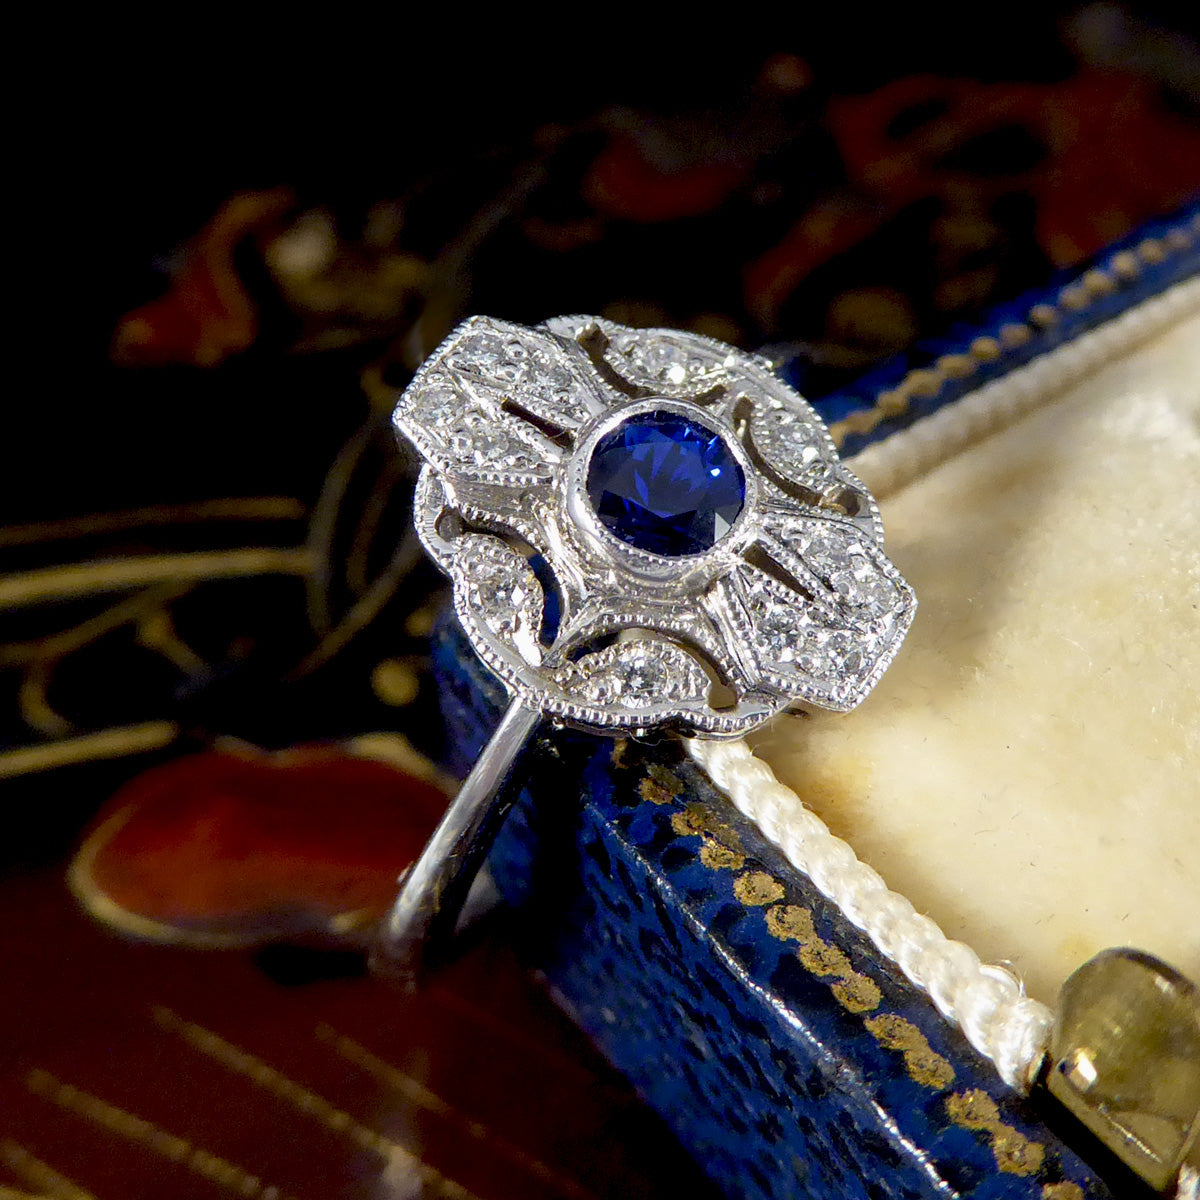 Premium Period Art Deco Replica Sapphire and Diamond Plaque Ring in 18ct White Gold